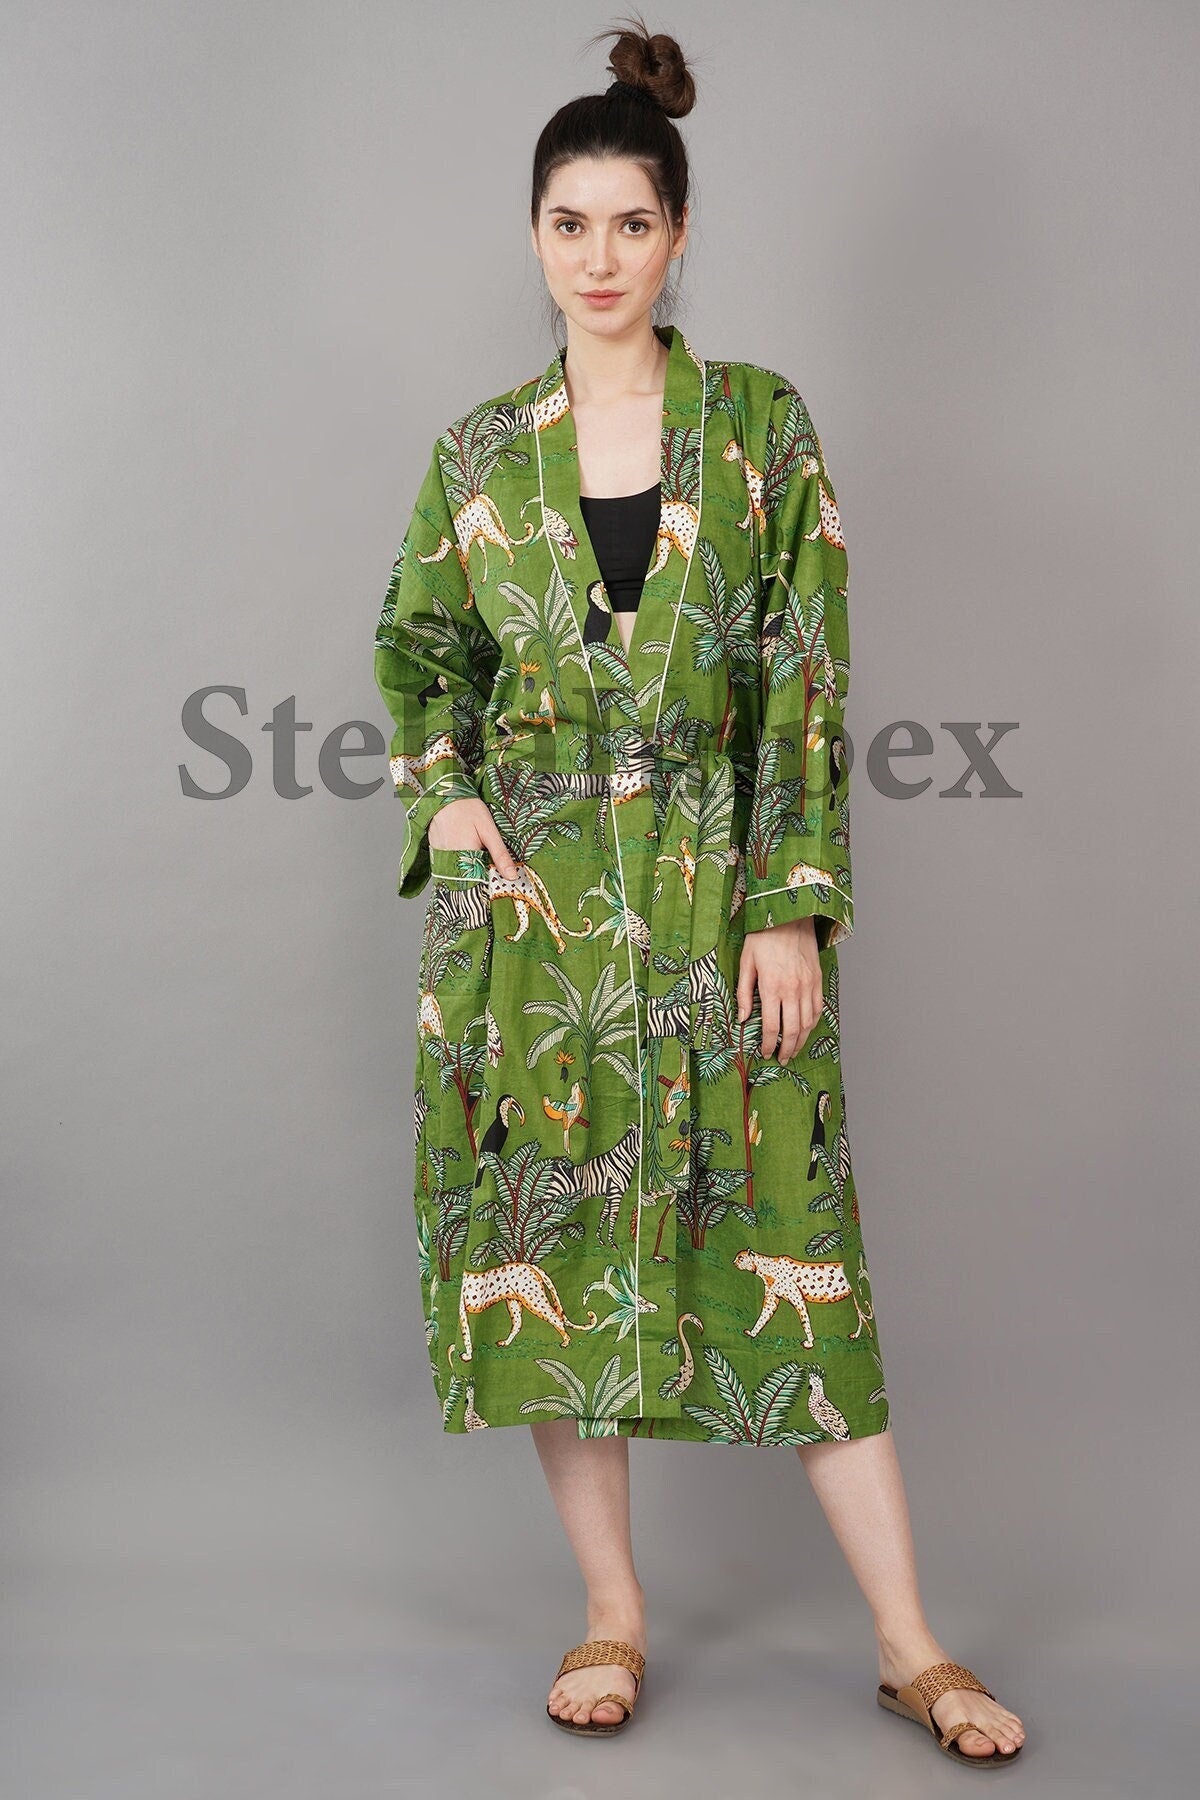 Trendy Cotton Kimono Elegant Green Jungle Print Bathrobe Resort Wear Beach Bikini Cover-ups Boho Kimono Bathrobe, Gift for Her